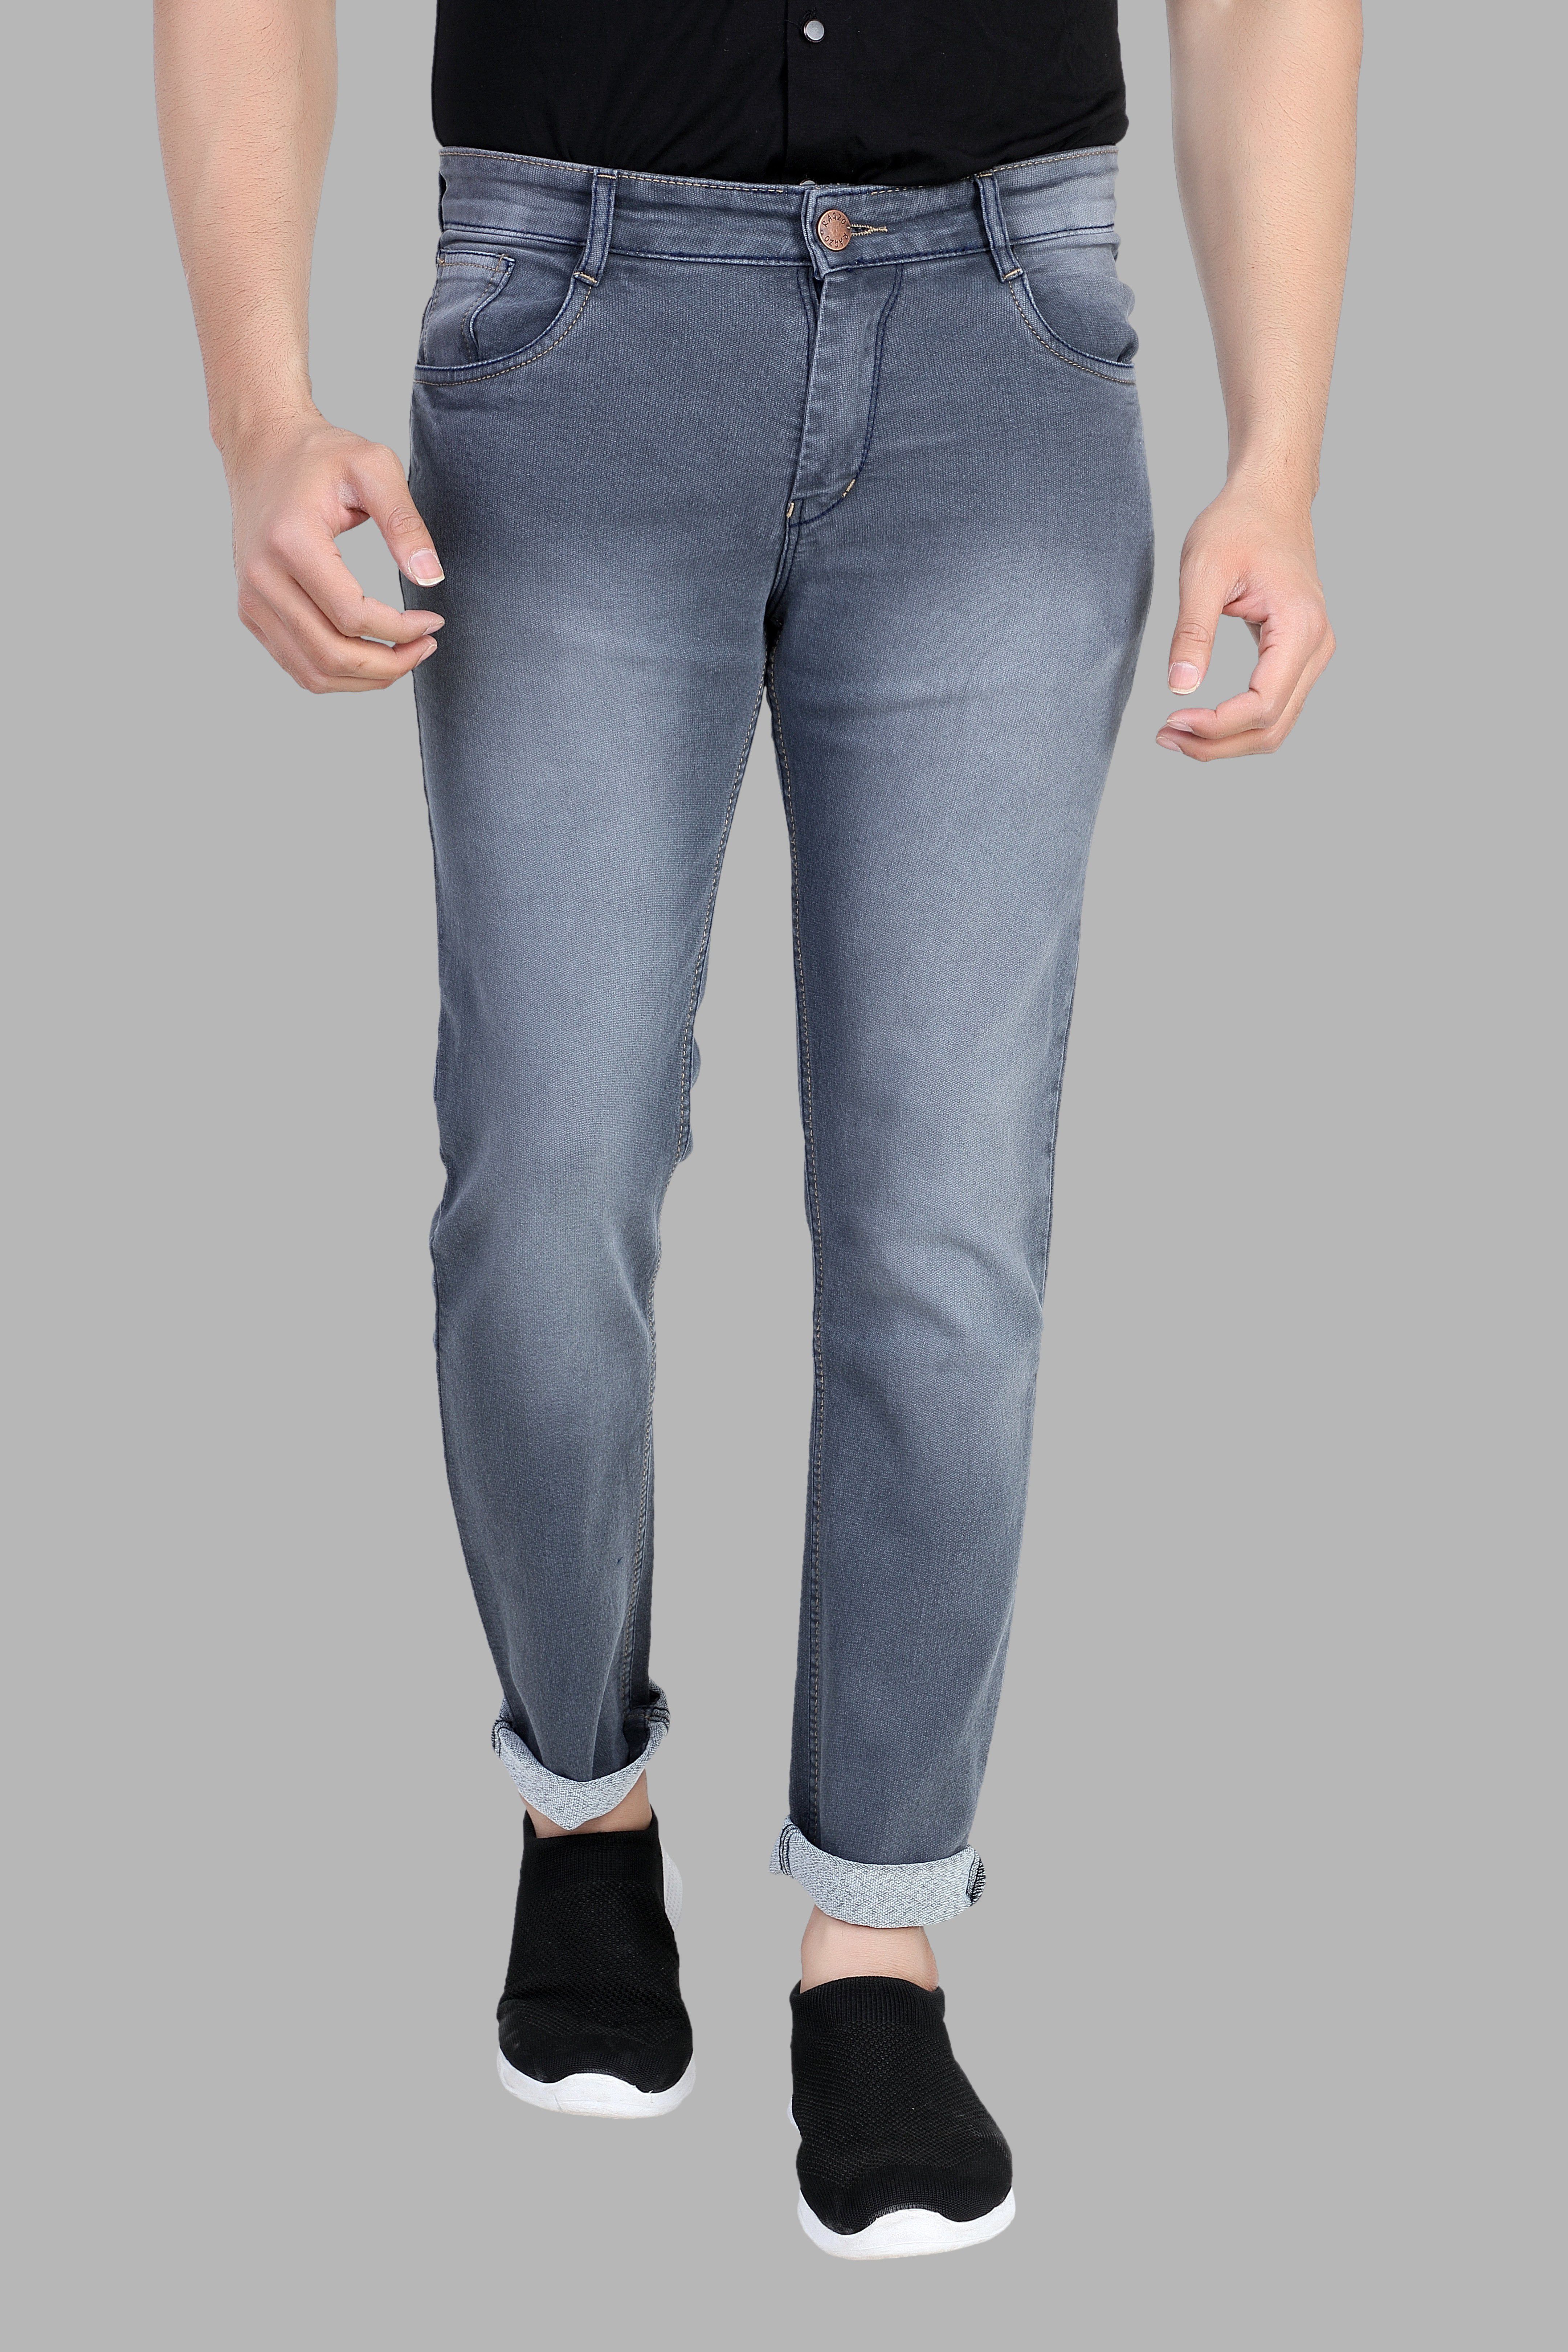     			RAGZO - Grey Denim Slim Fit Men's Jeans ( Pack of 1 )